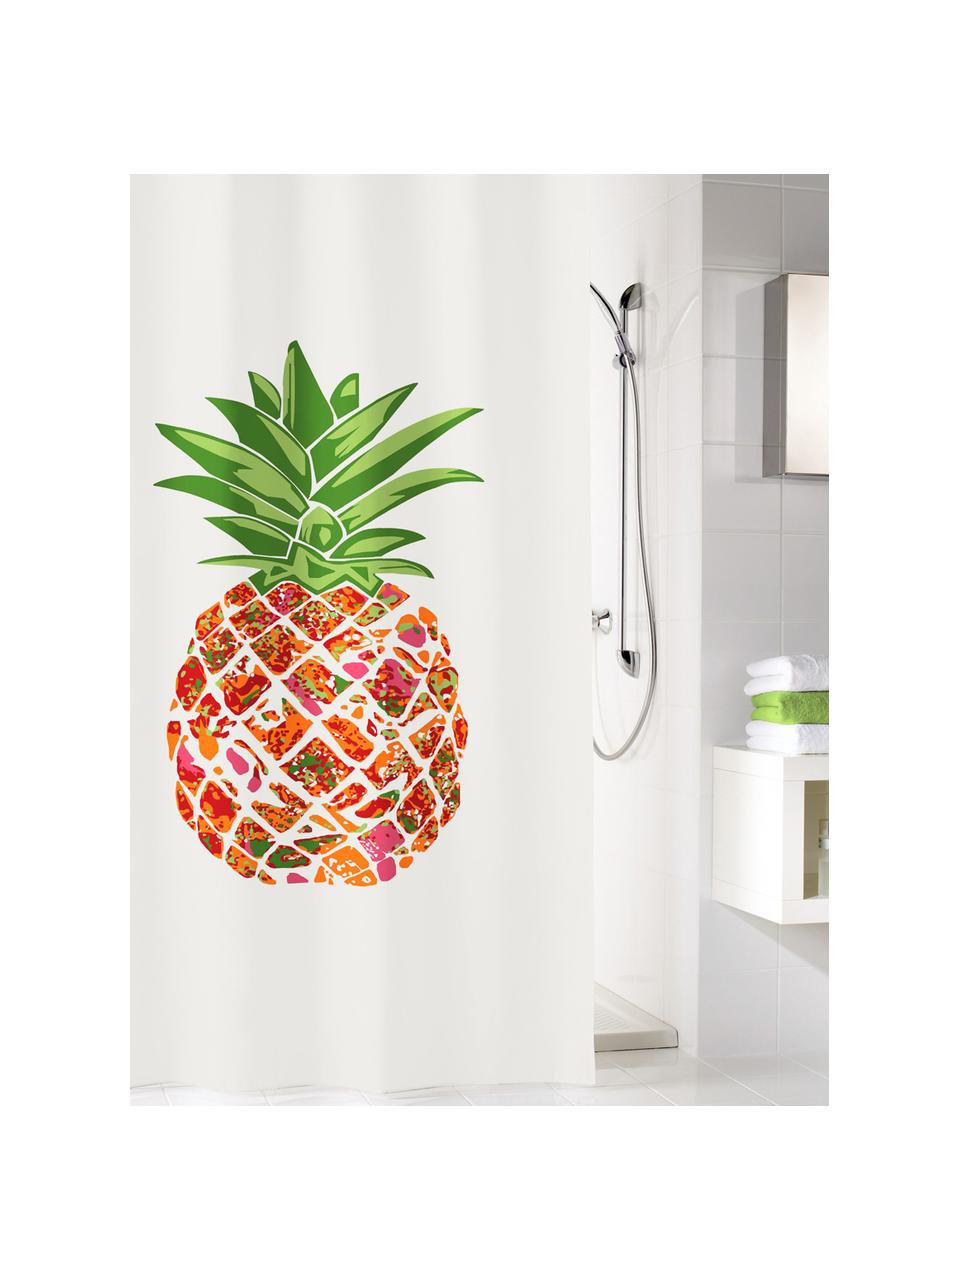 Duschvorhang Pineapple mit Ananas-Motiv, 100% Polyester
Wasserabweisend, nicht wasserdicht, Weiss, Grün, Orange, Rot, 180 x 200 cm